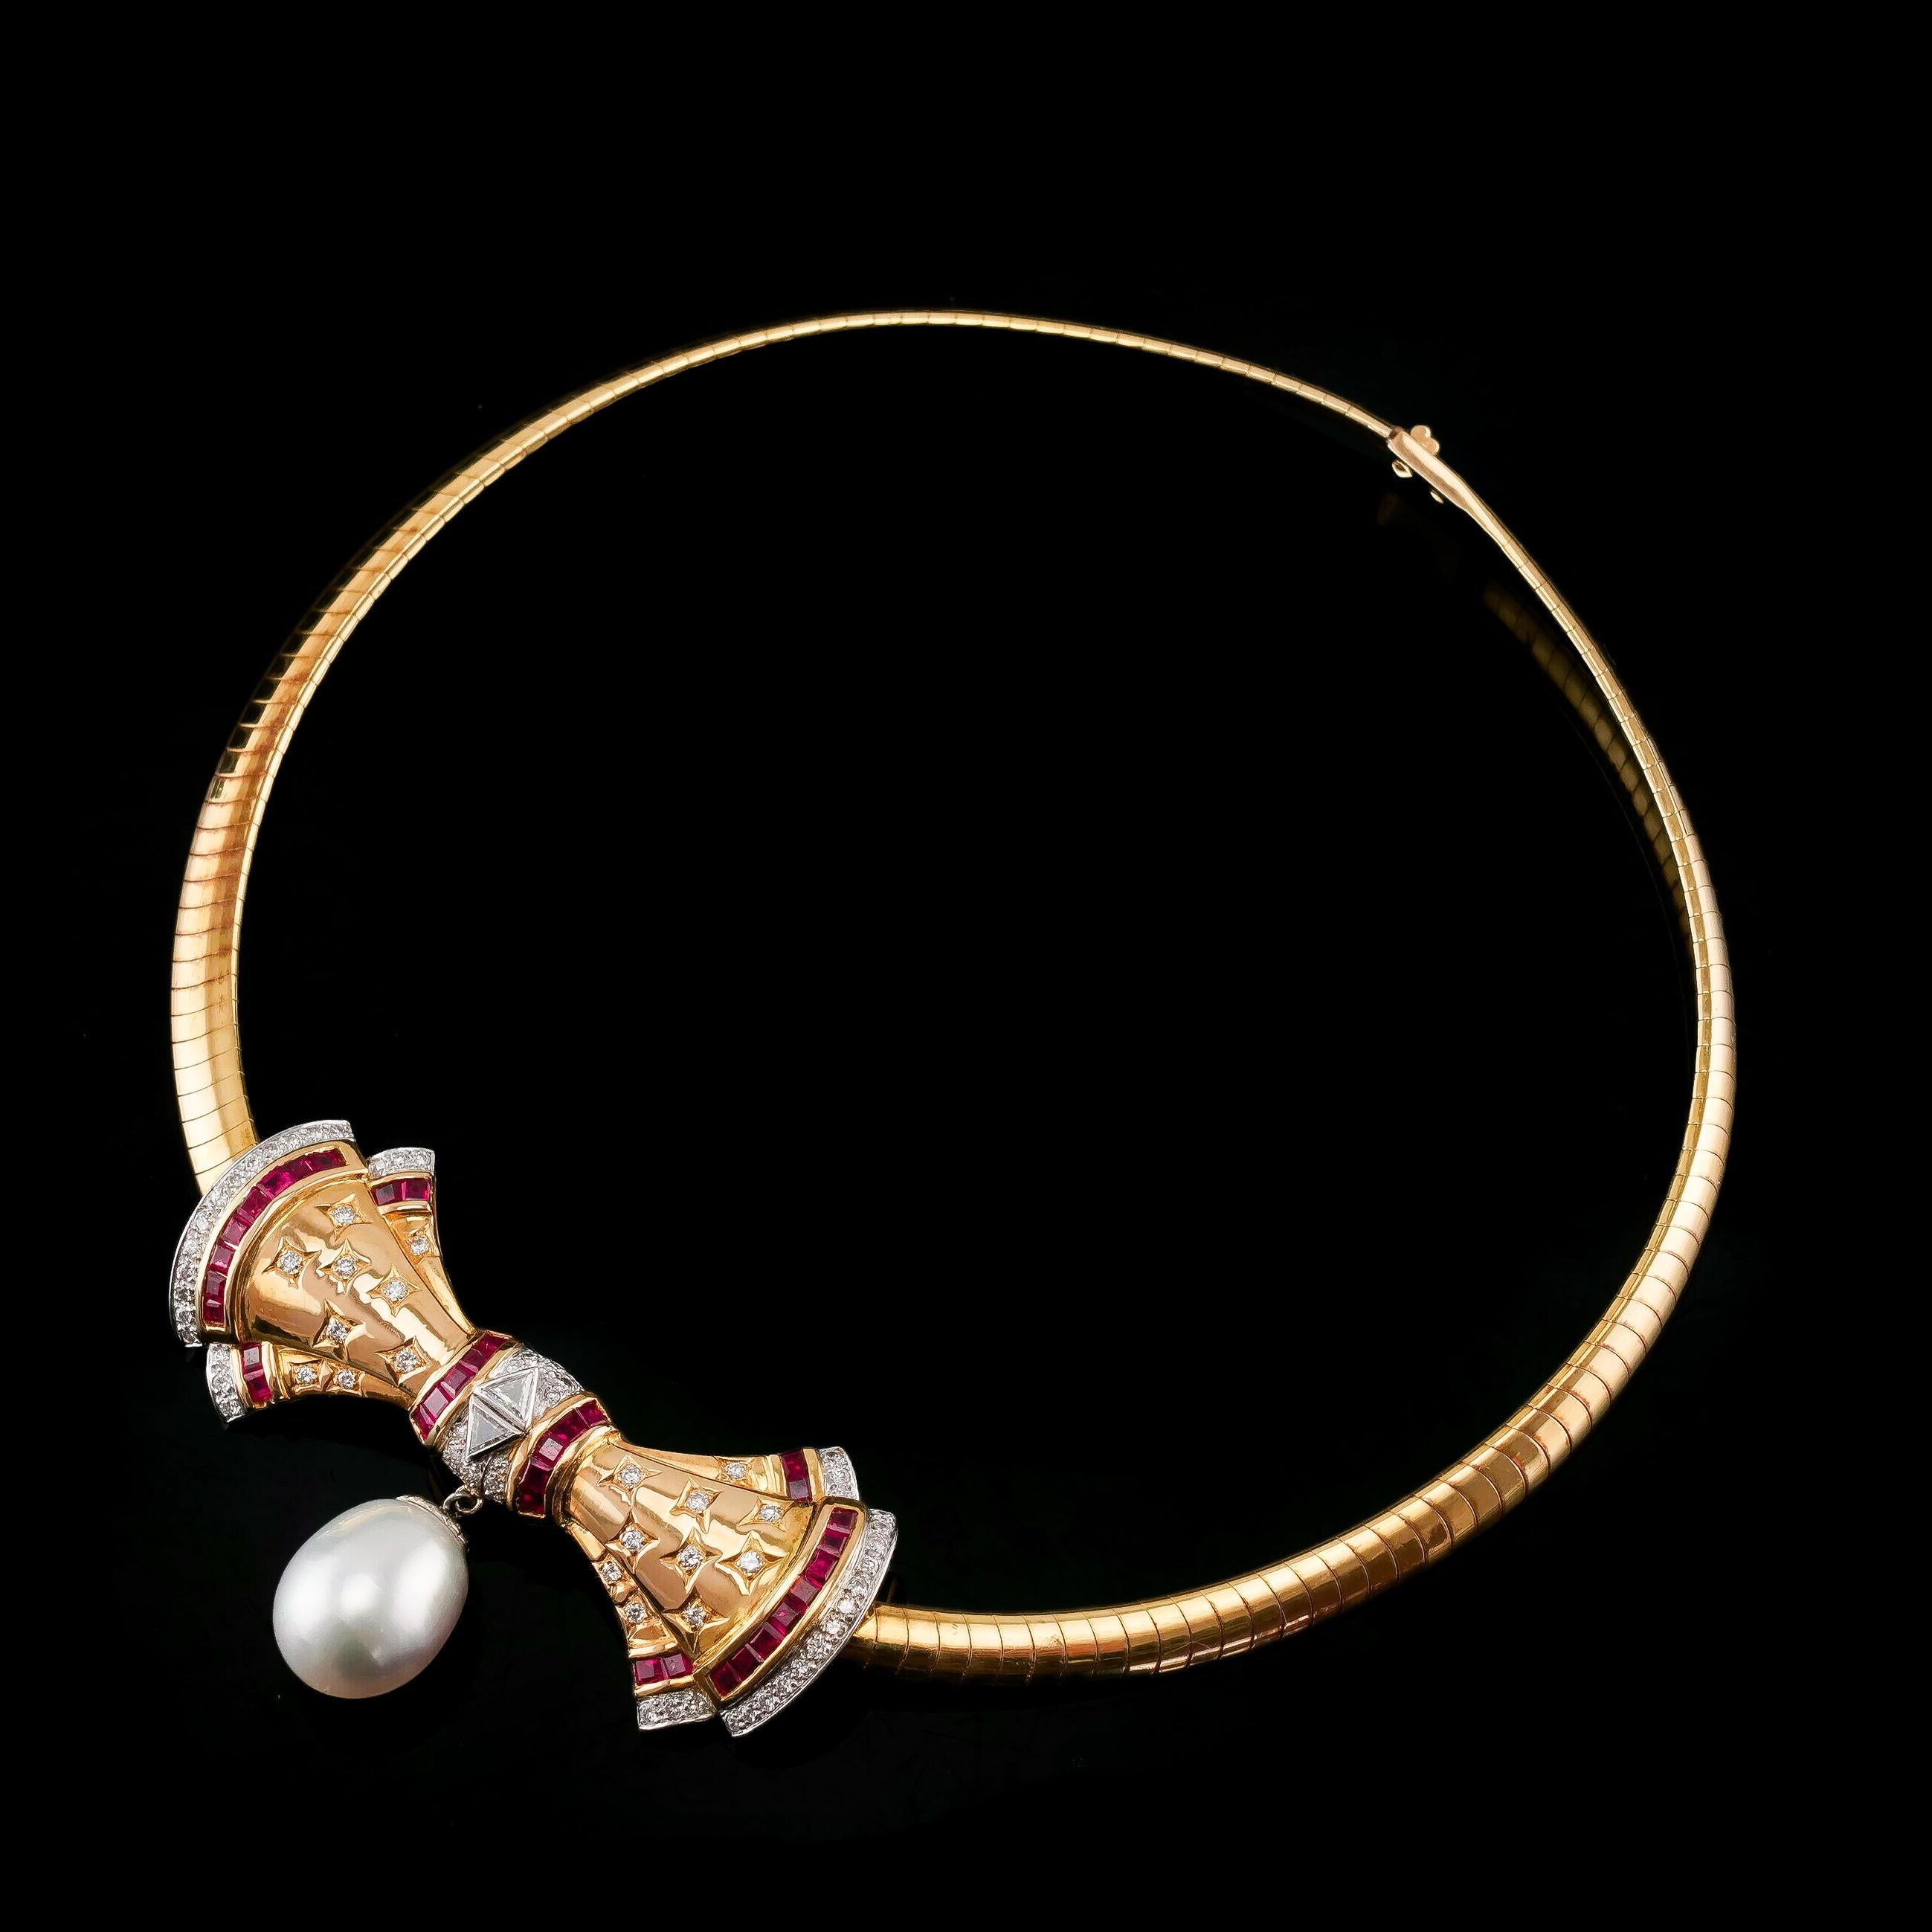 Nous sommes ravis de vous proposer ce merveilleux et élégant collier vintage en or 18 carats. L'ensemble du collier est remarquablement conçu et réalisé avec un nœud central et une chaîne à maillons en forme de serpent.

Le 